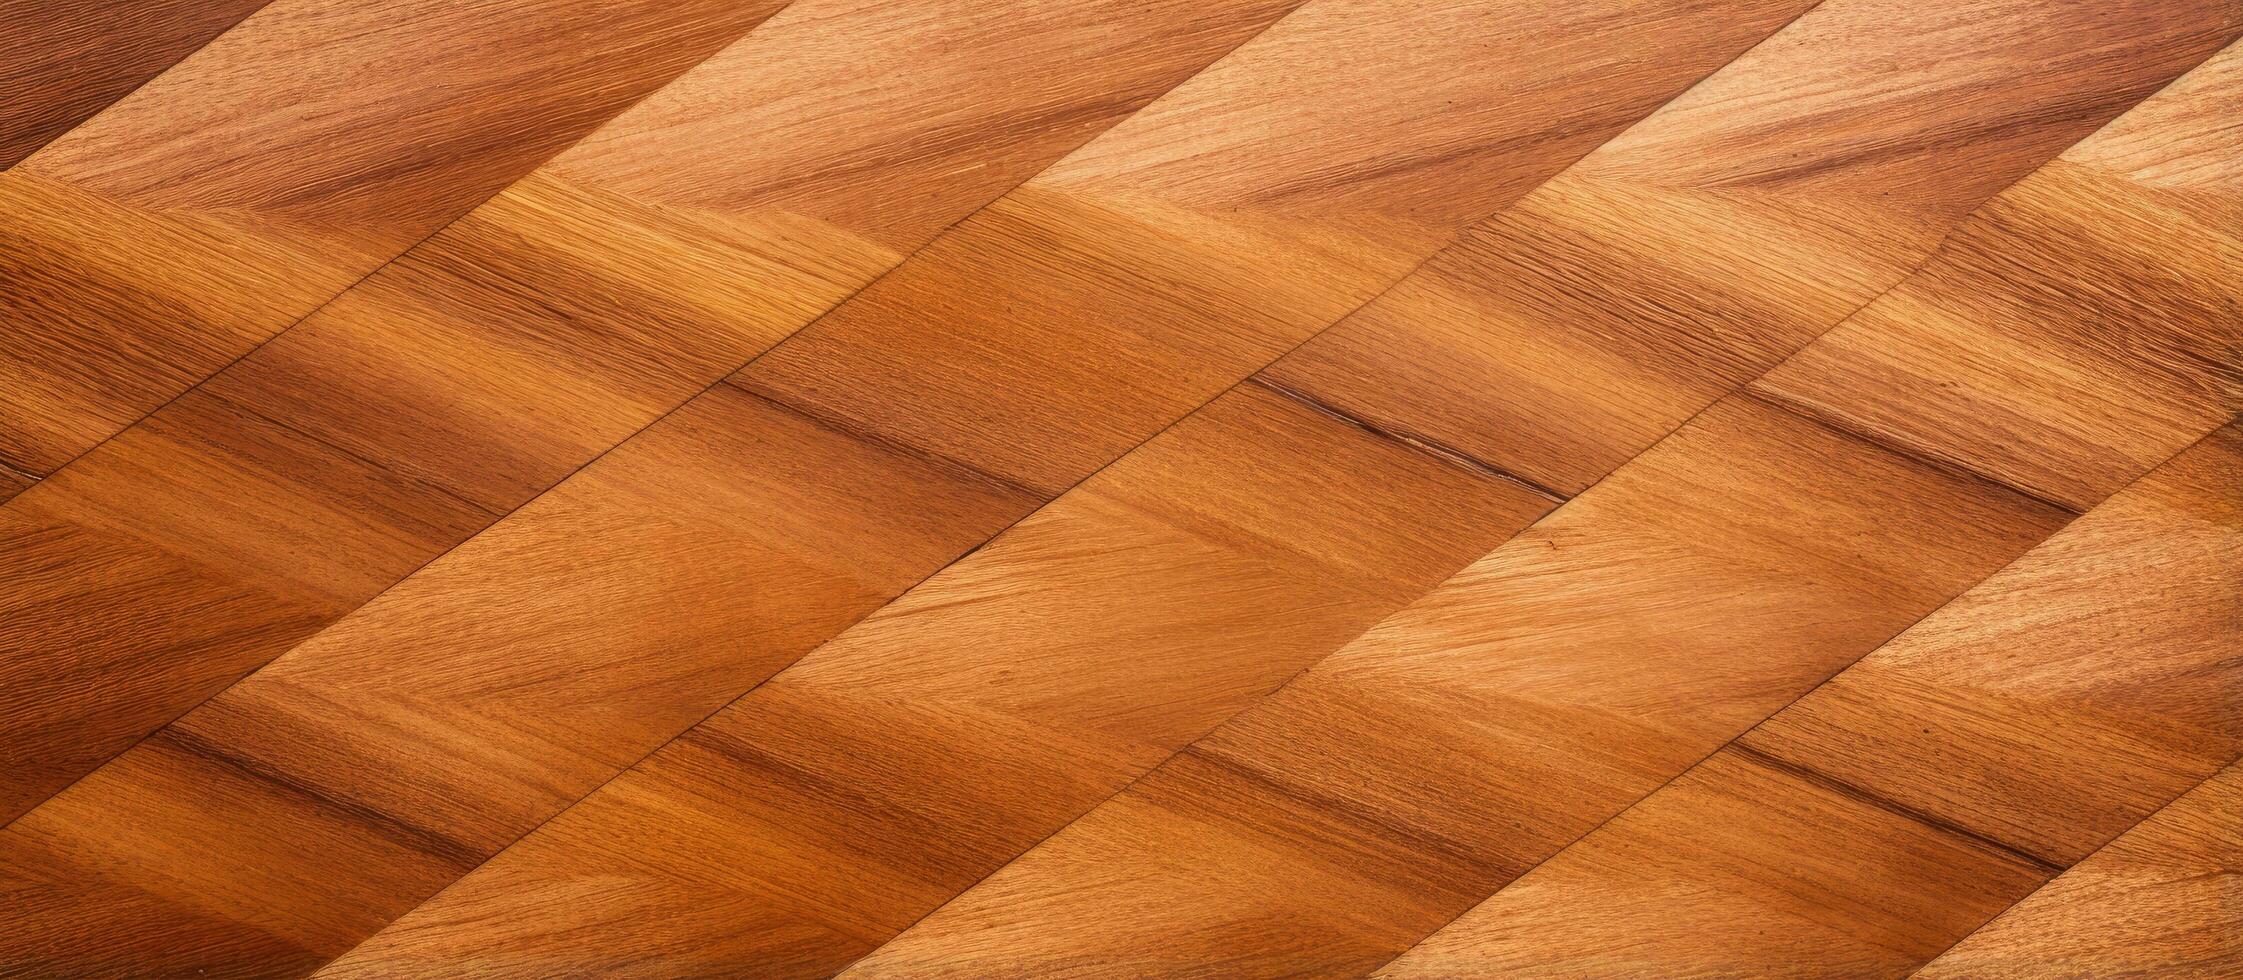 abstrakt romb mönstrad ljus brun naturlig trä faner panel foto